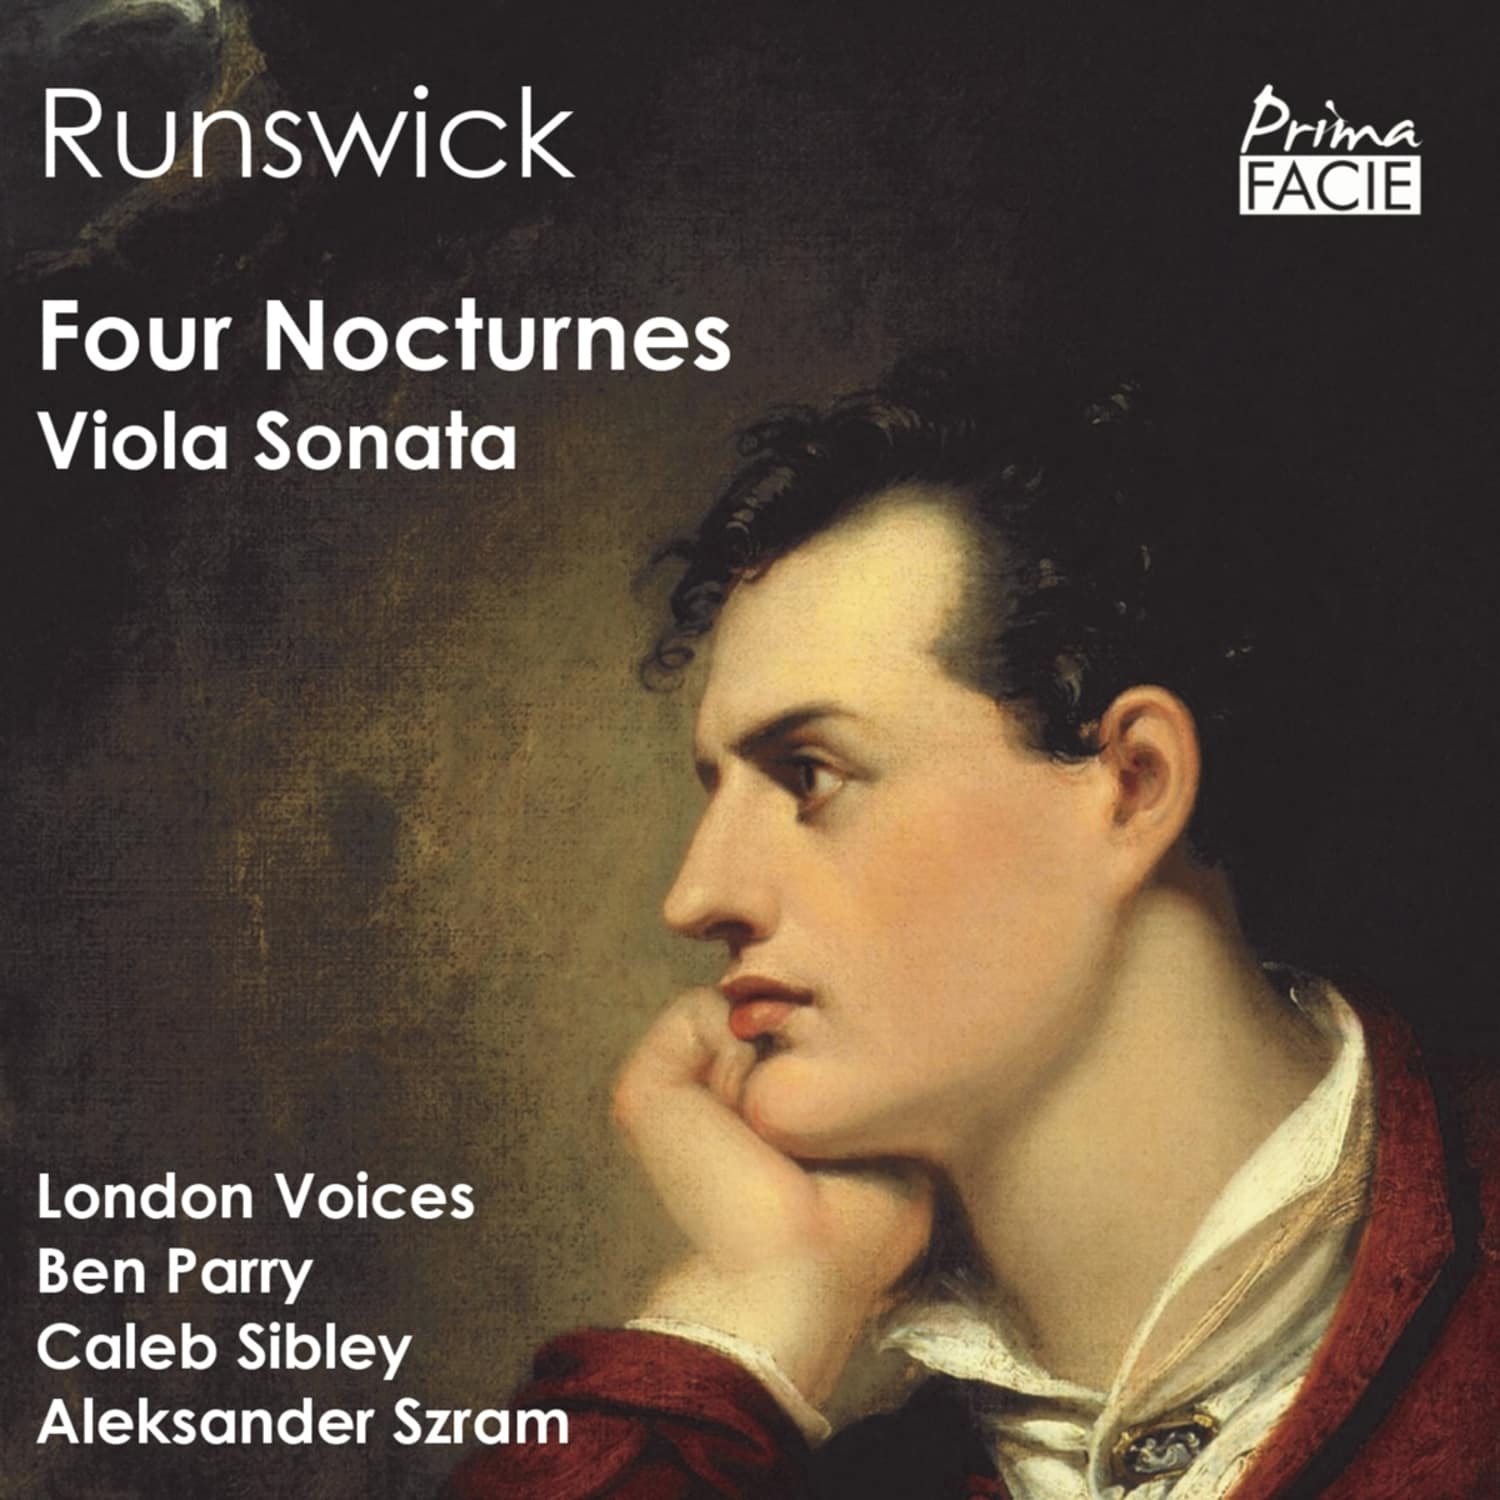 London Voices & Ben Parry - RUNSWICK: FOUR NOCTURNES 